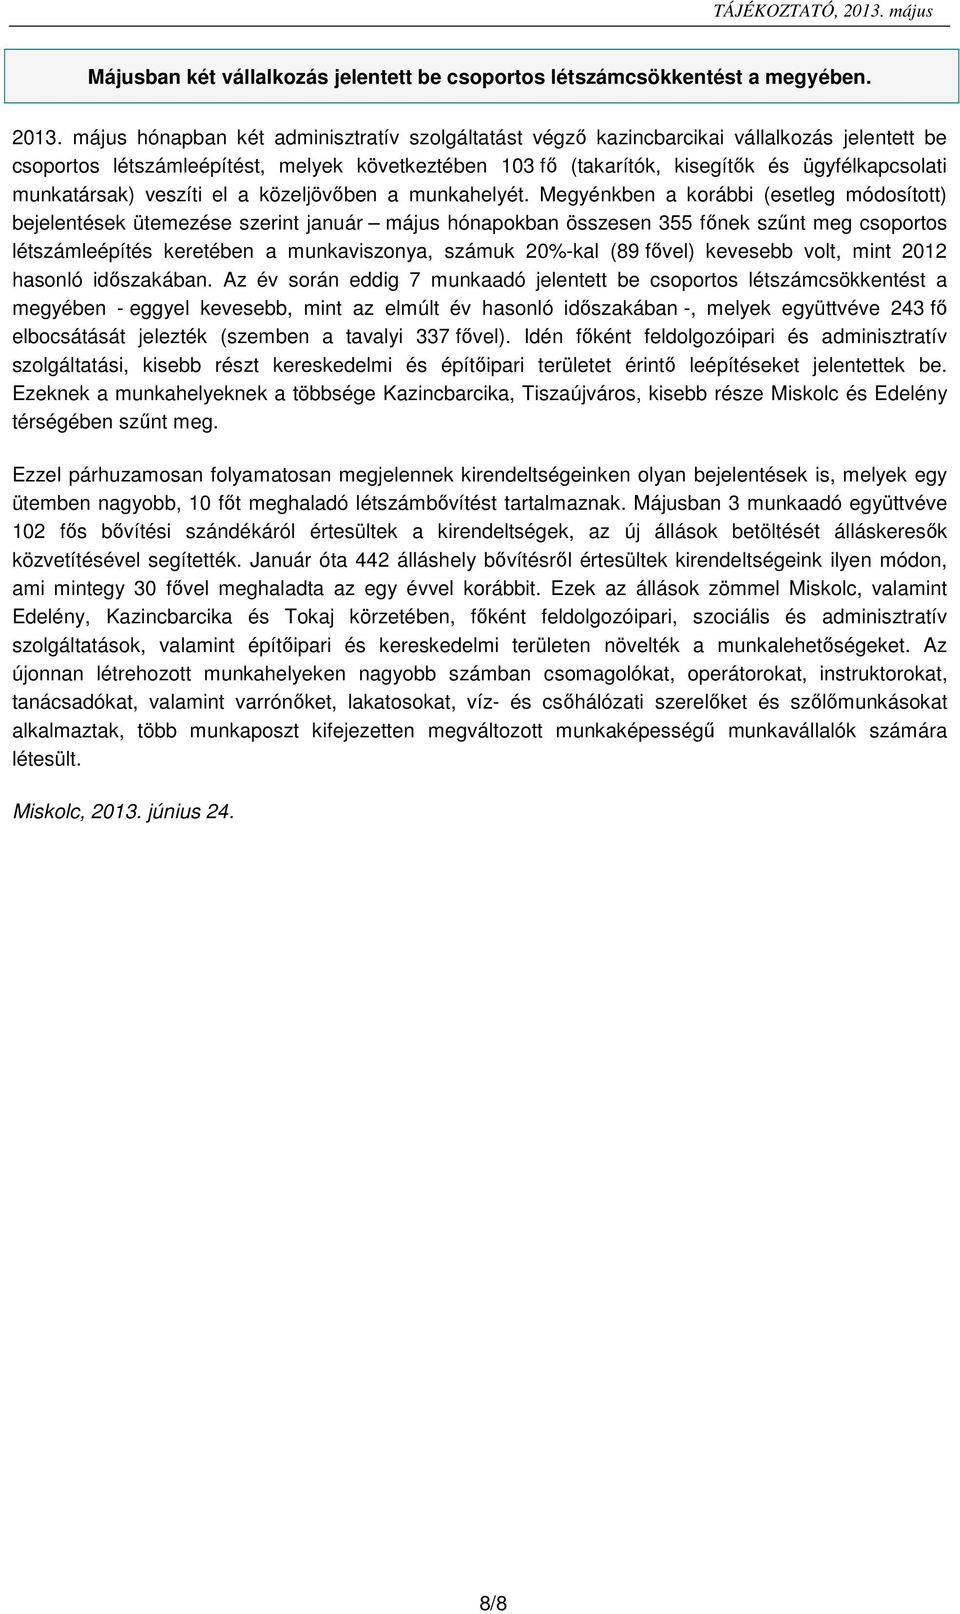 május hónapban két adminisztratív szolgáltatást végző kazincbarcikai vállalkozás jelentett be csoportos létszámleépítést, melyek következtében 13 (takarítók, kisegítők és ügyfélkapcsolati